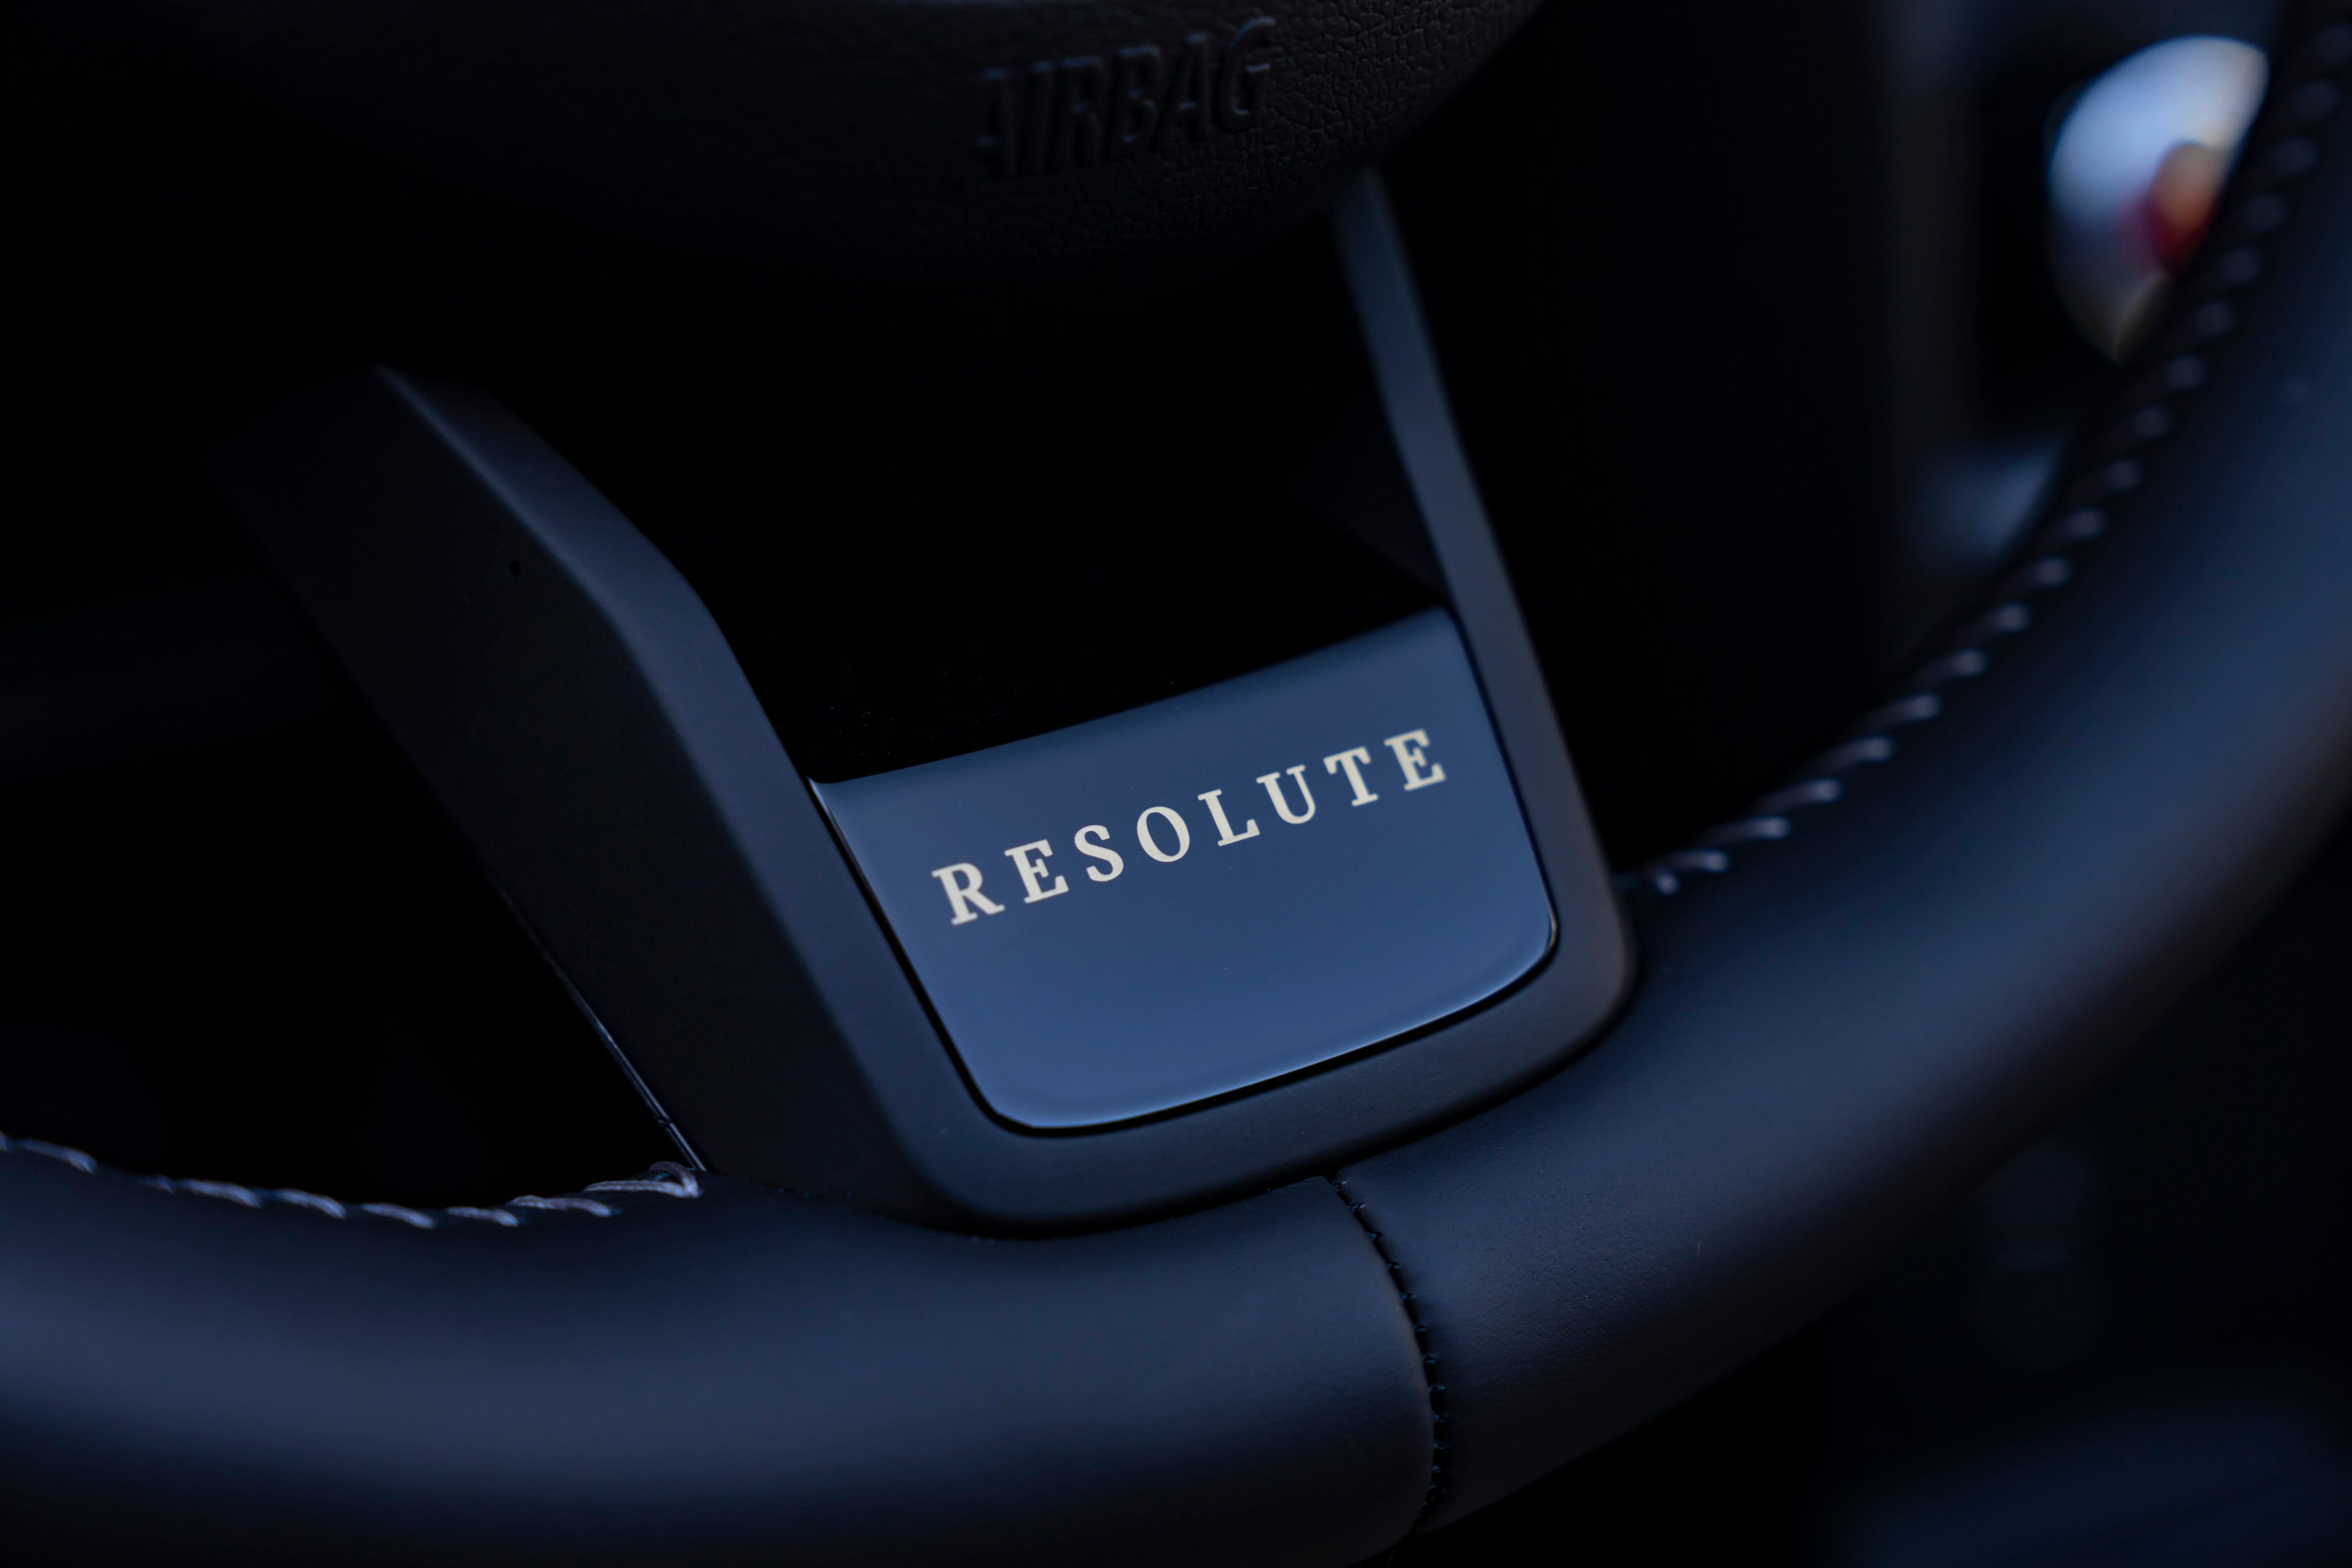 2022 MINI Cooper S Convertible Resolute Edition